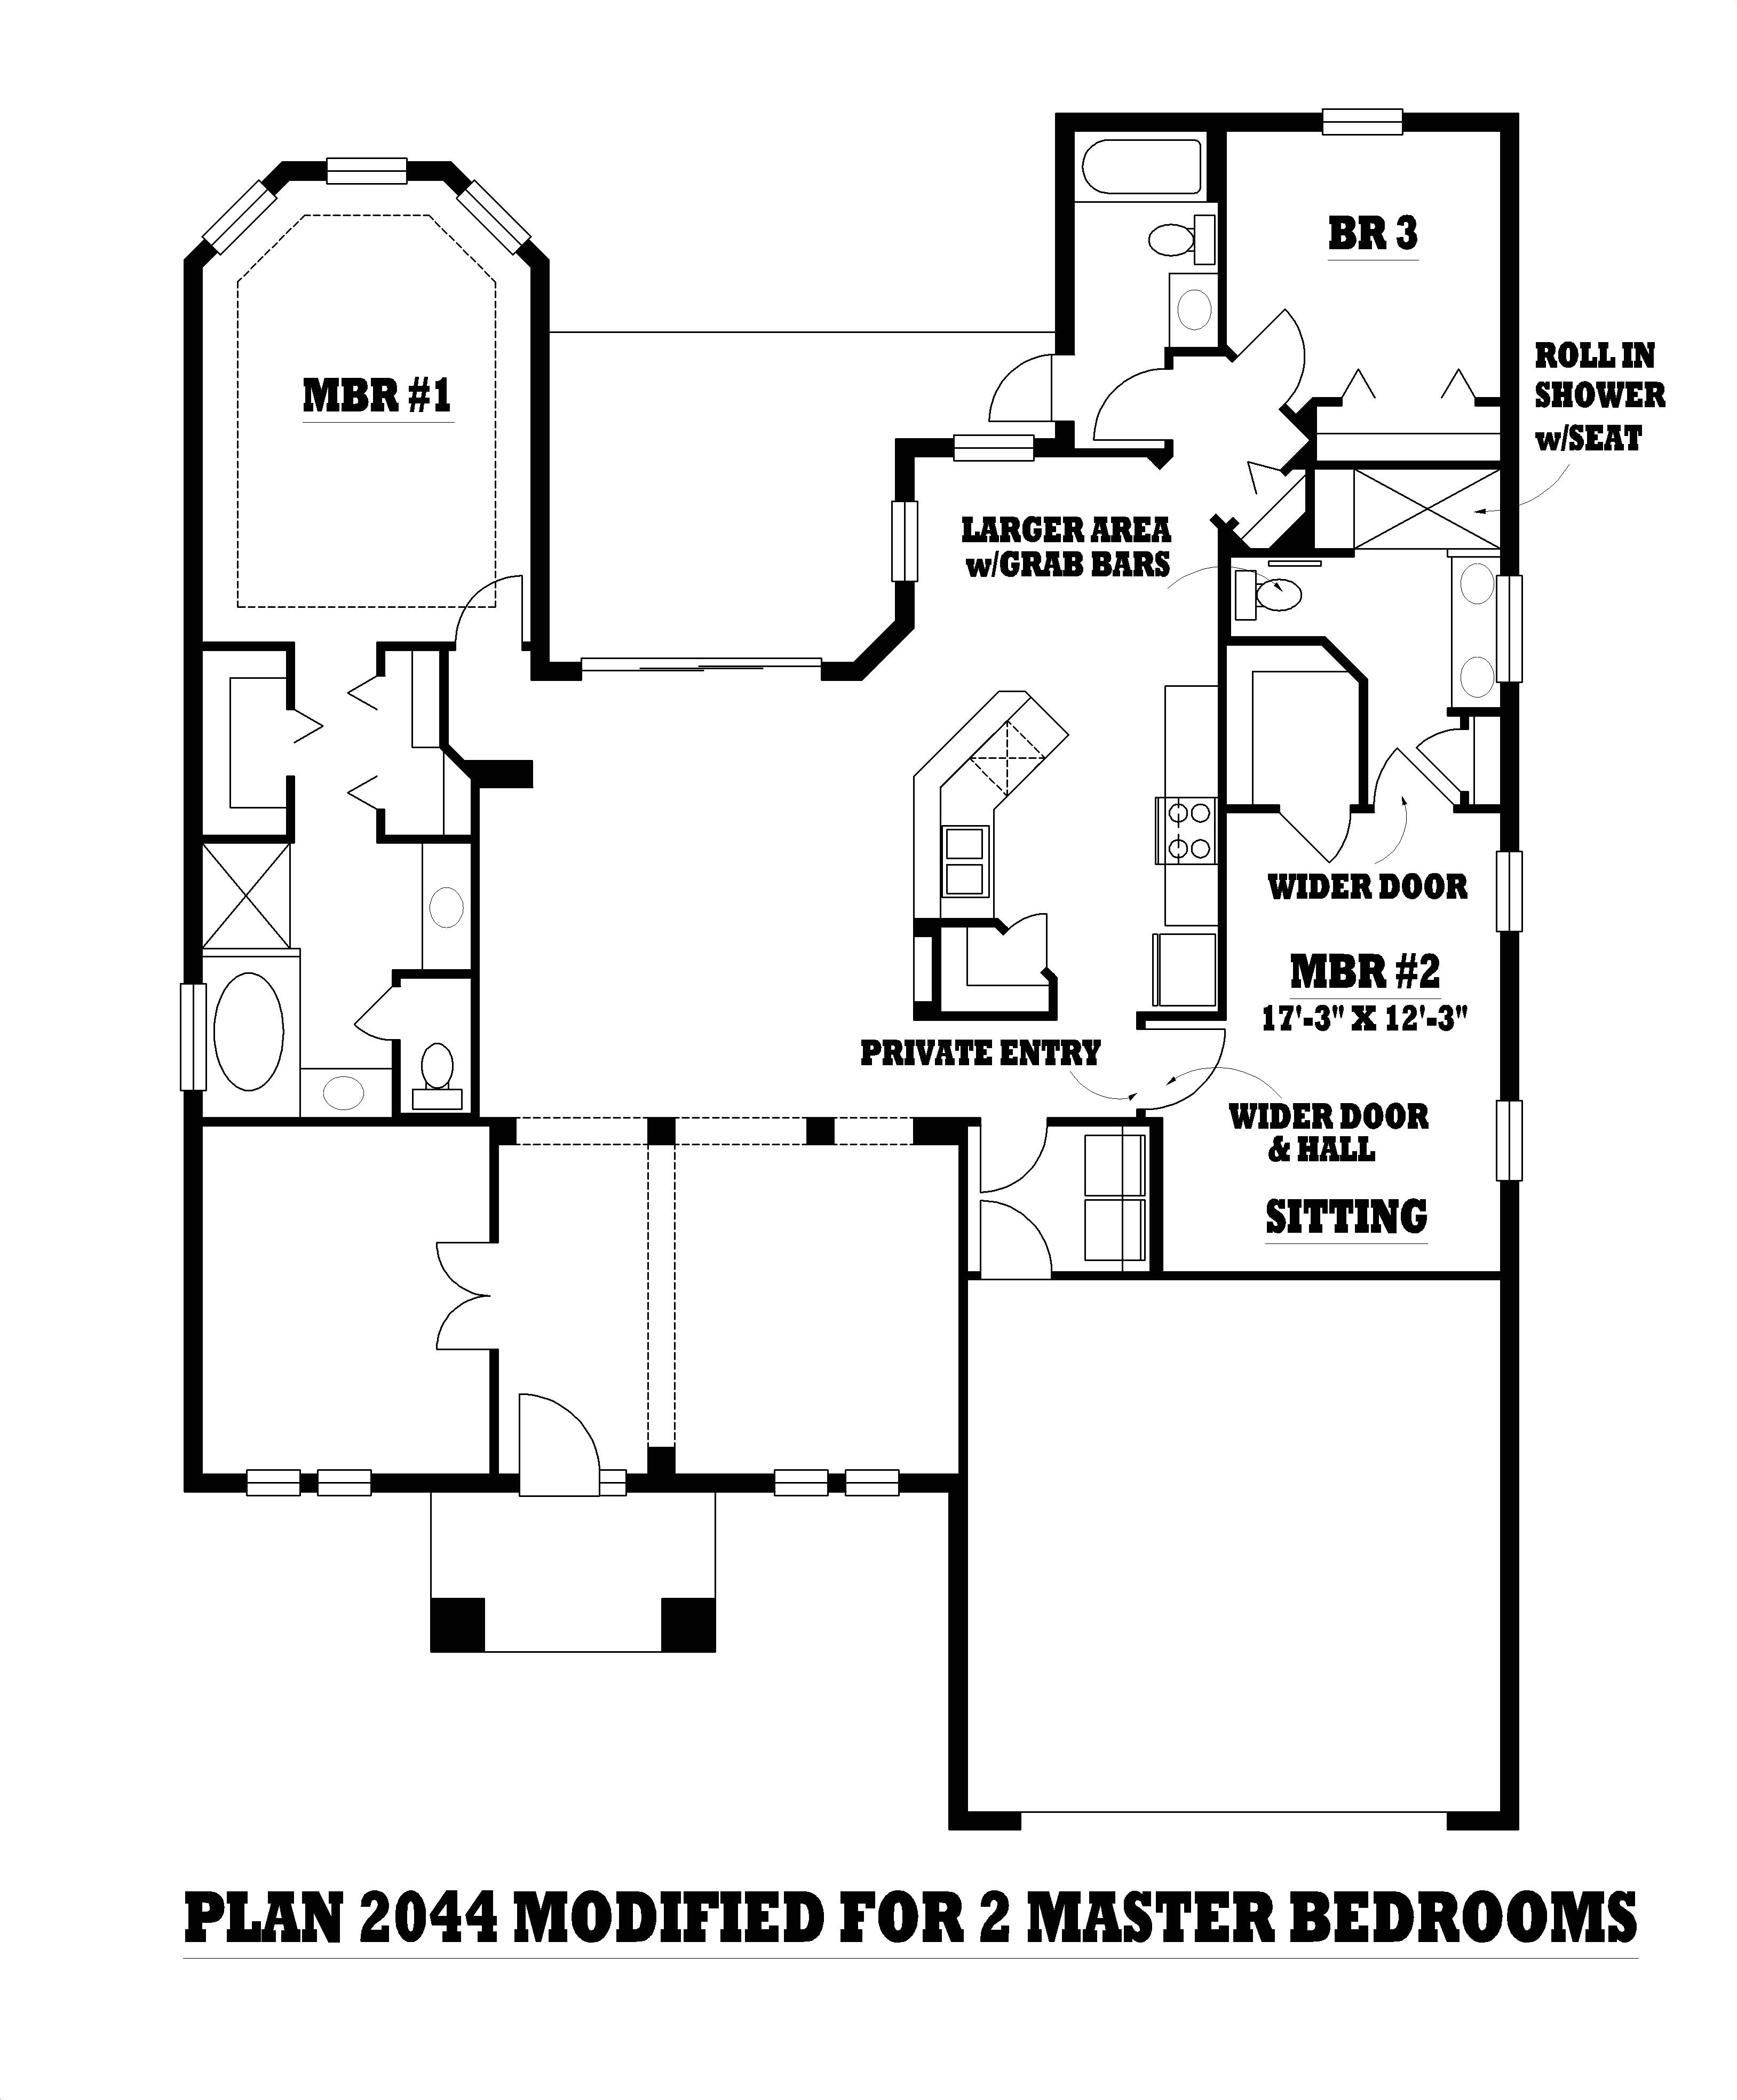 encouragement conex house plans together with conex house plans home design blueprints